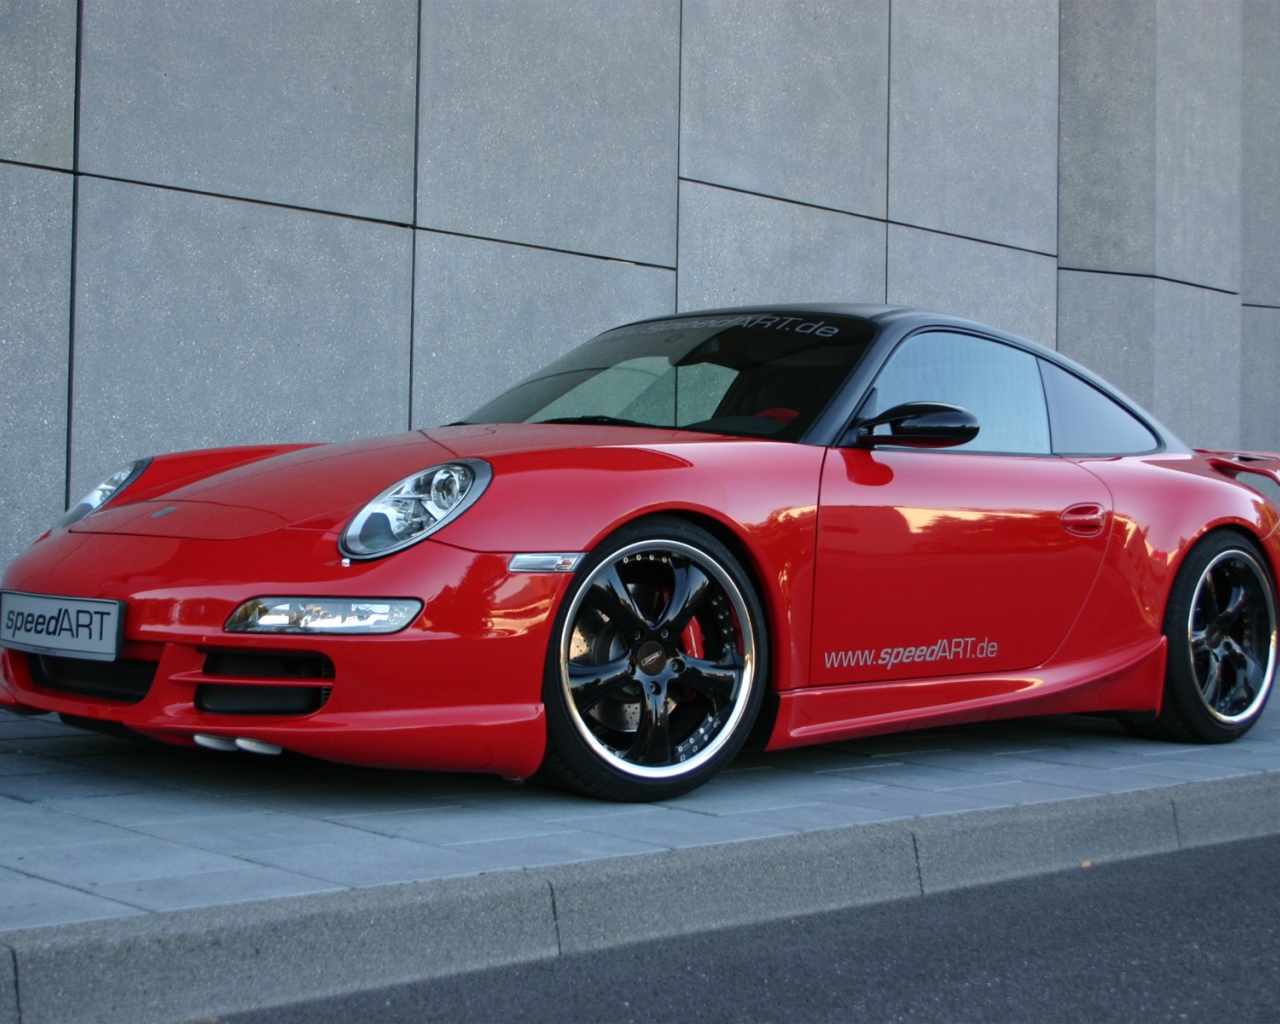 Красный Porsche